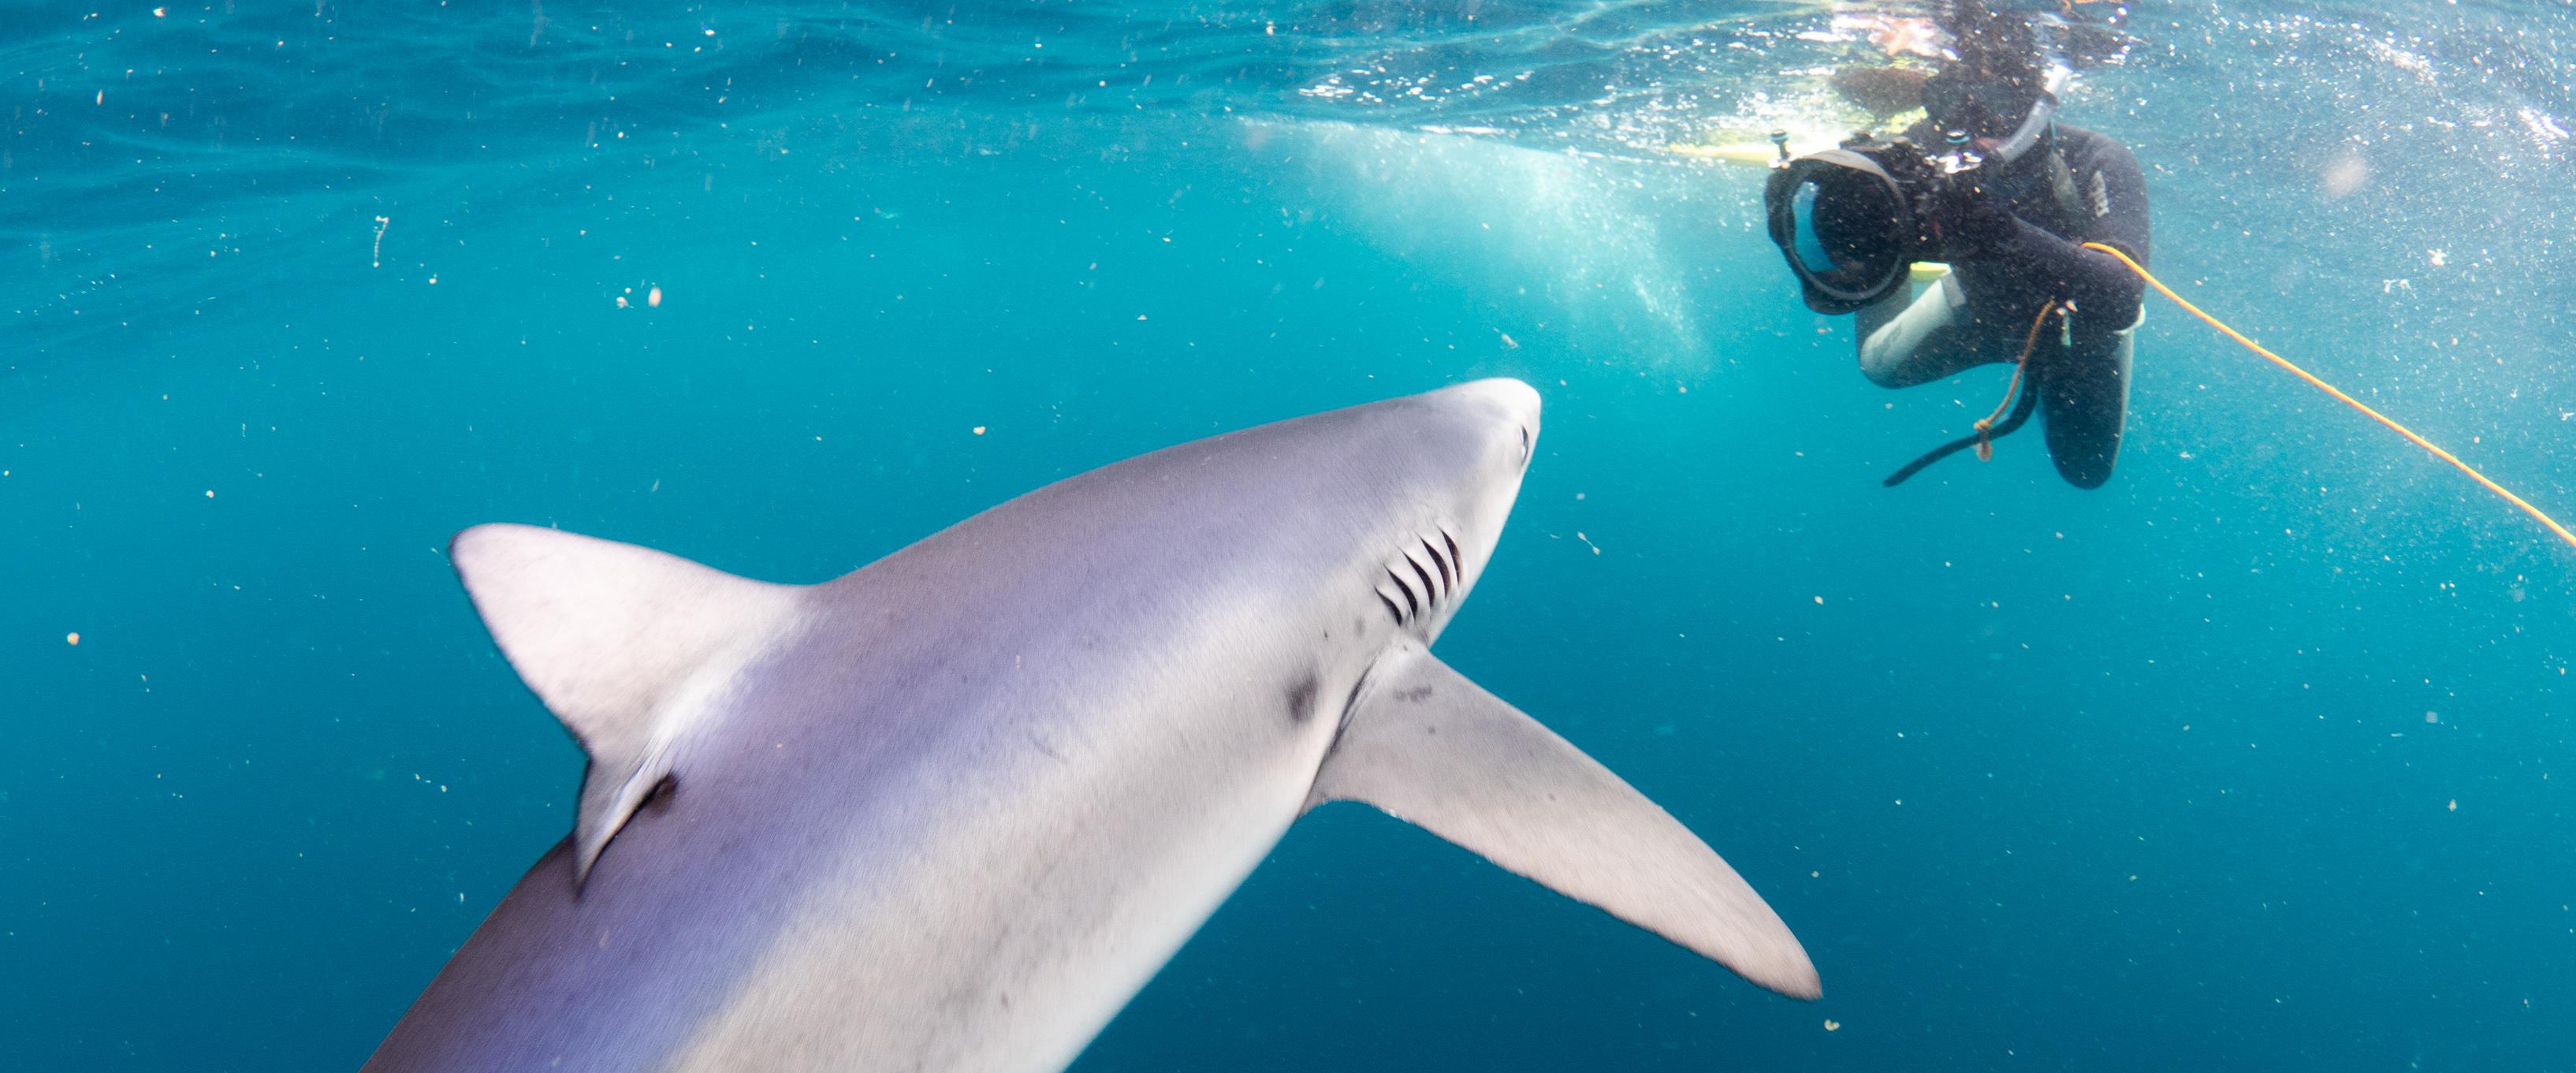 blue shark and photographer